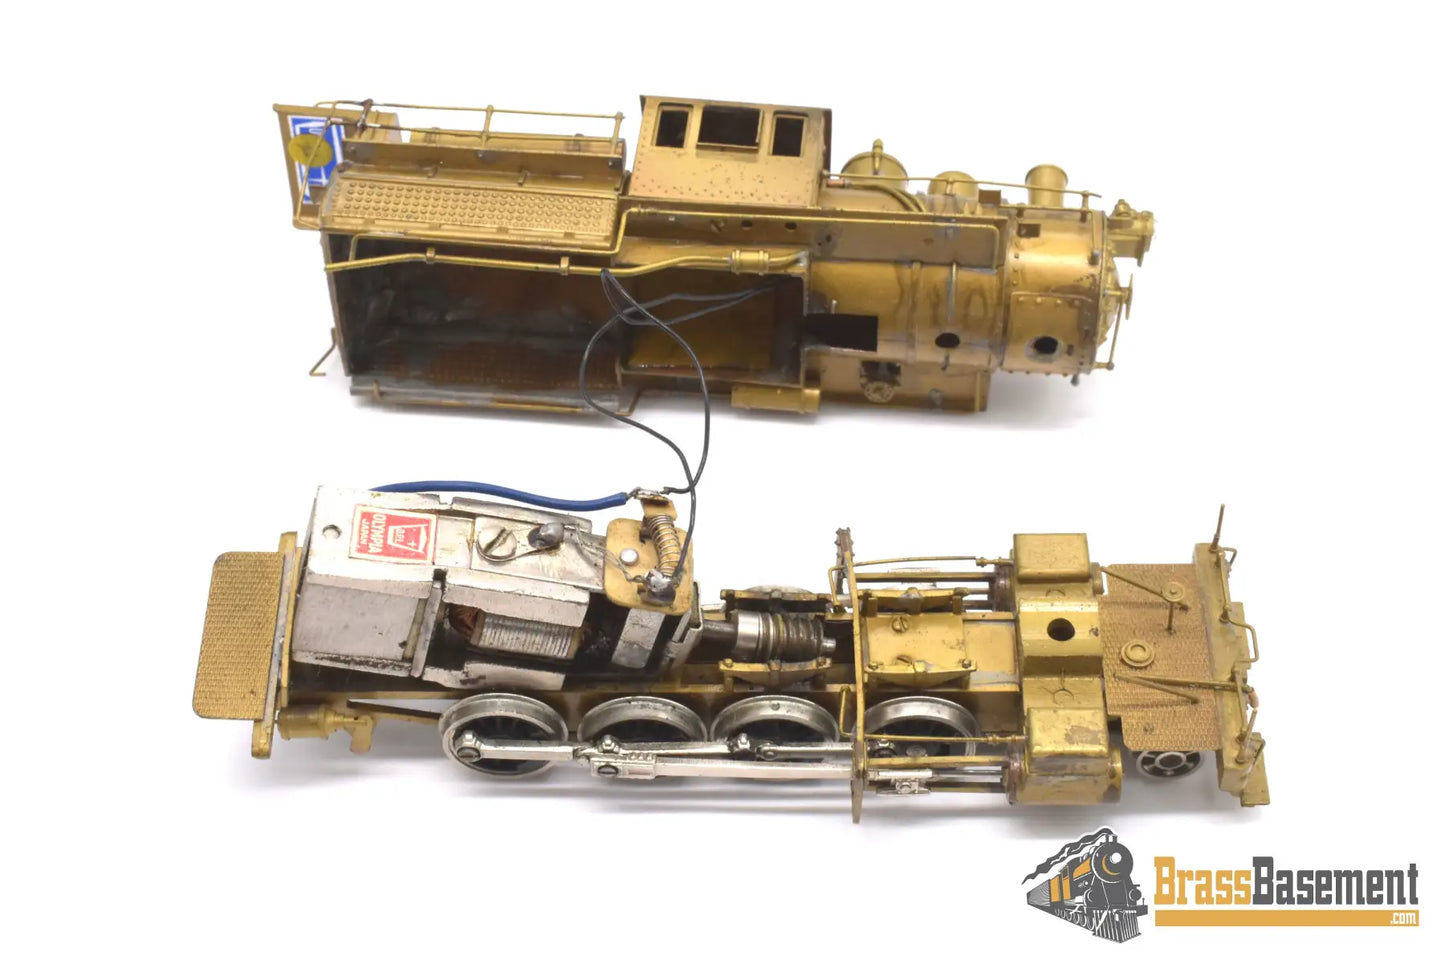 Ho Brass - Gem Models Eh - 105 Reading 2 - 8 - 0 I5C Camelback Project Steam